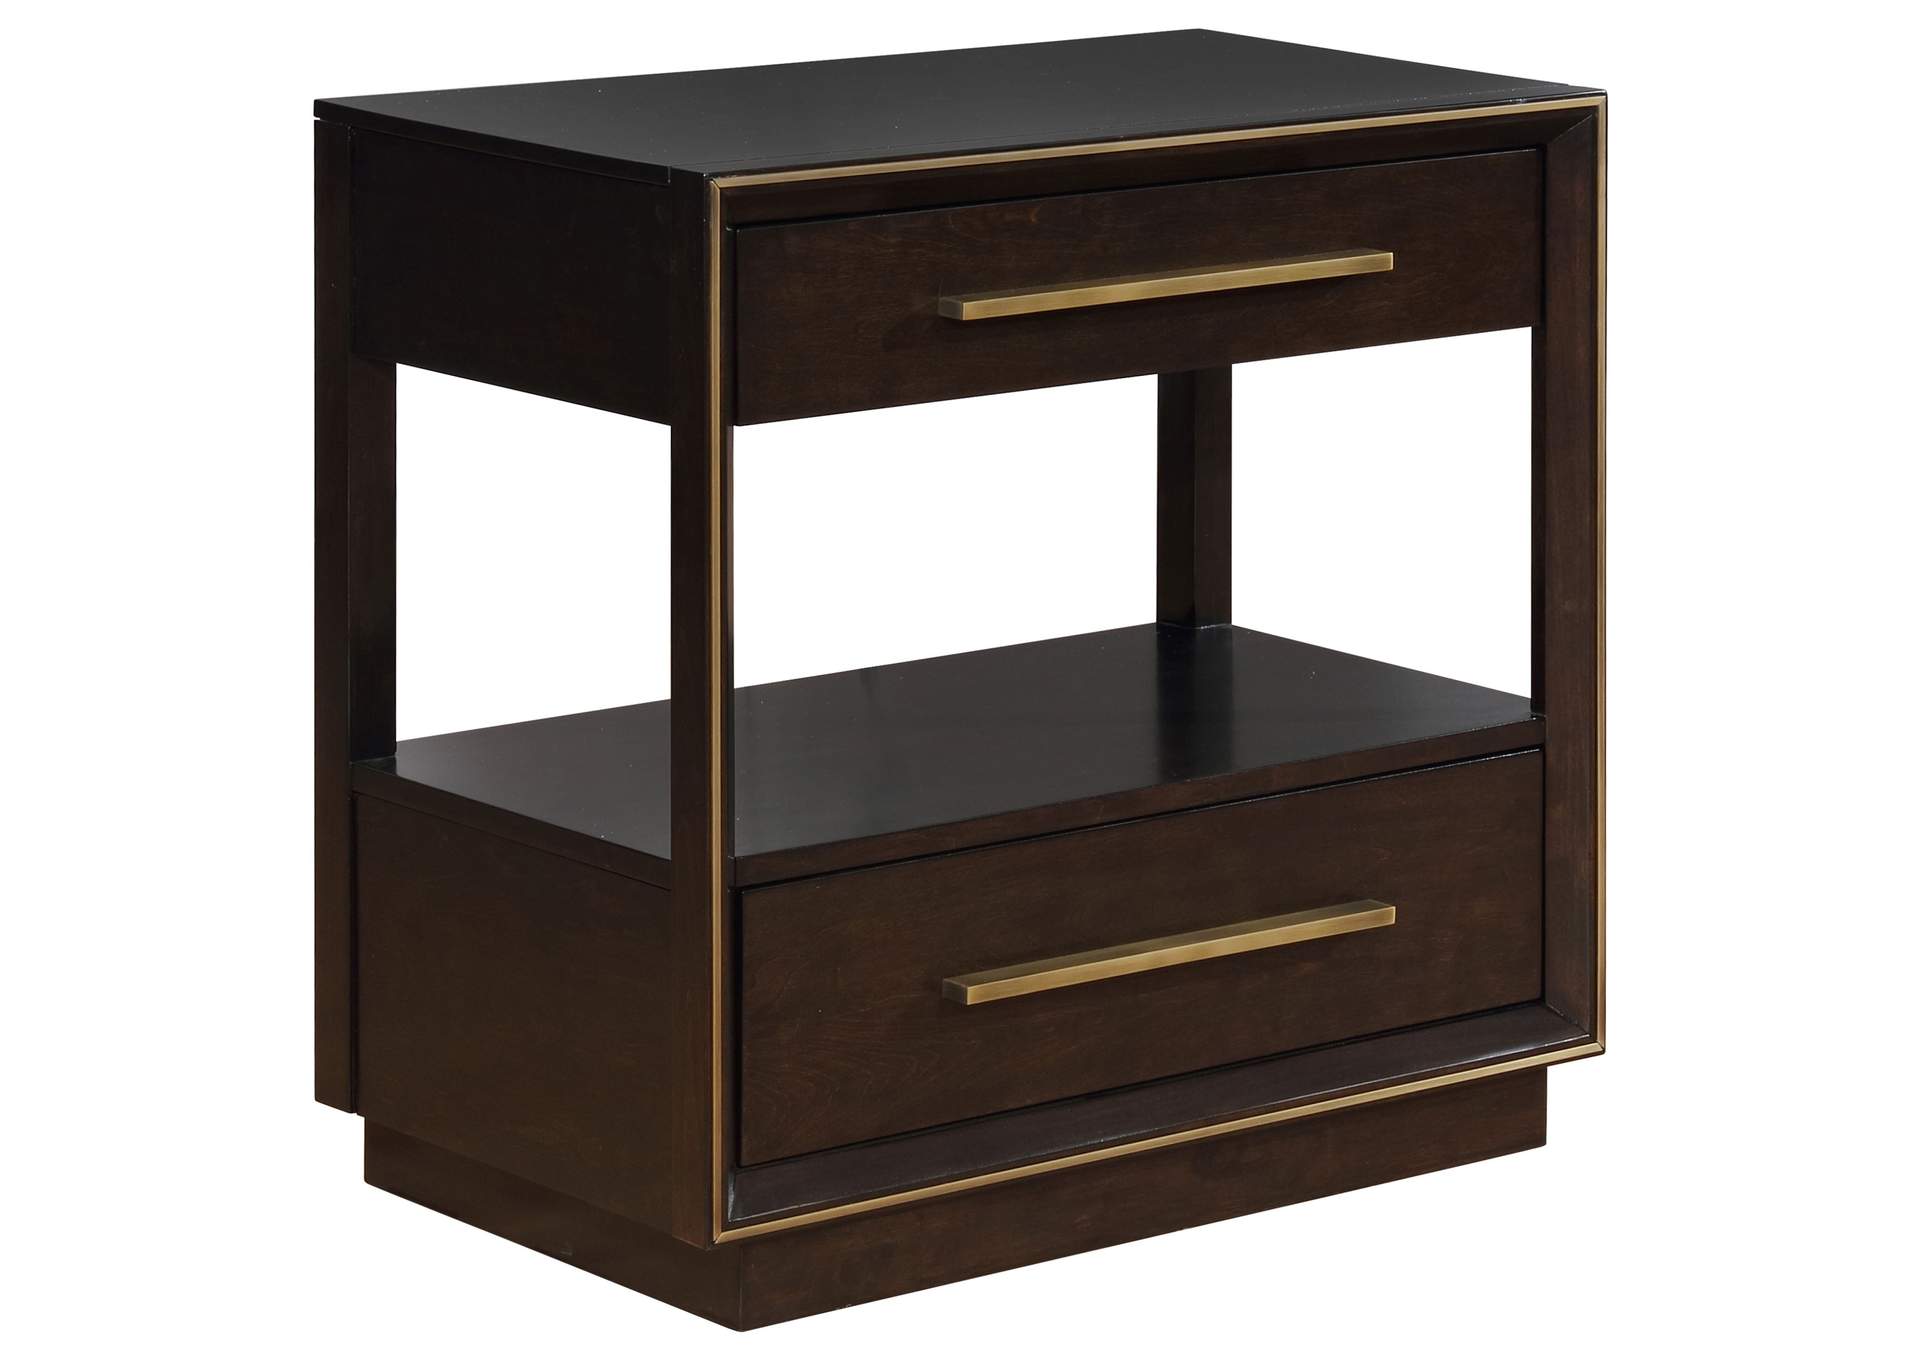 Durango 2-drawer Nightstand Smoked Peppercorn,Coaster Furniture